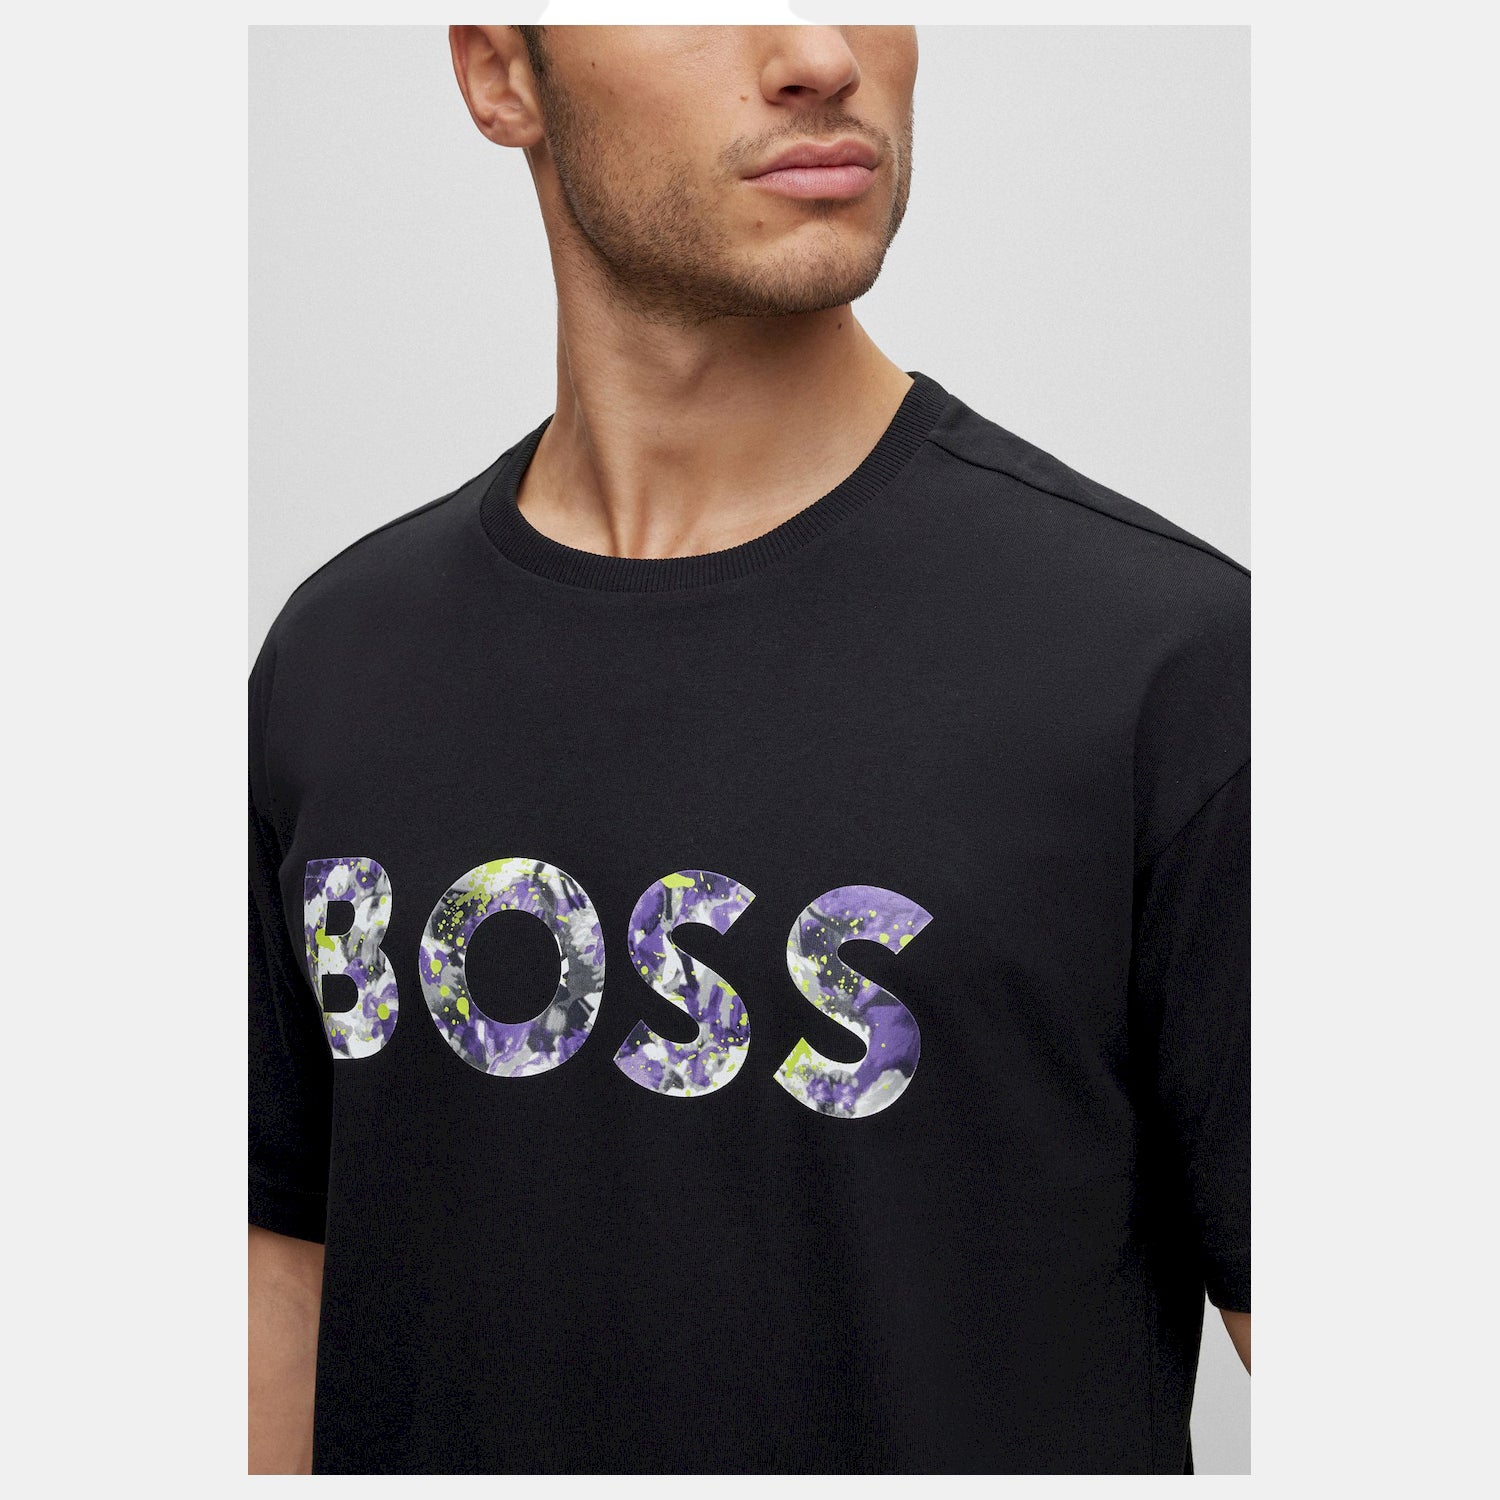 Boss T Shirt Tee Lotus 8802 Black Preto_shot4